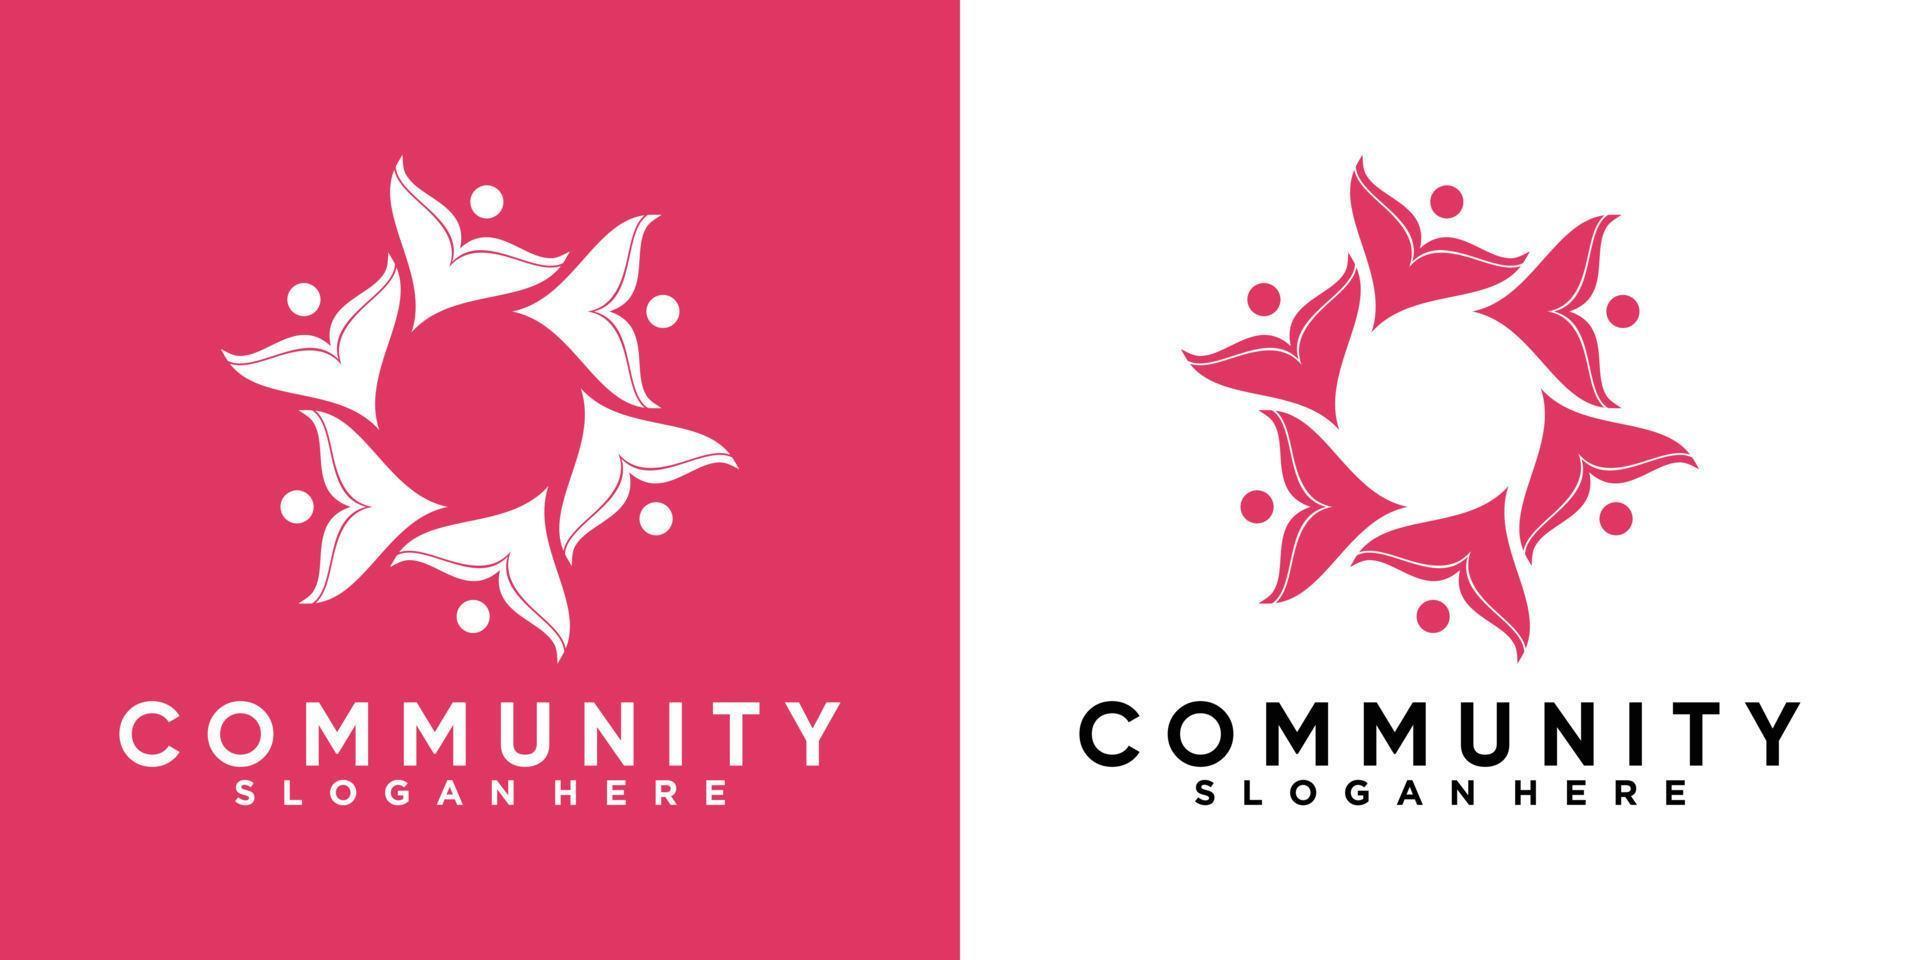 diseño de logotipo comunitario con concepto creativo vector